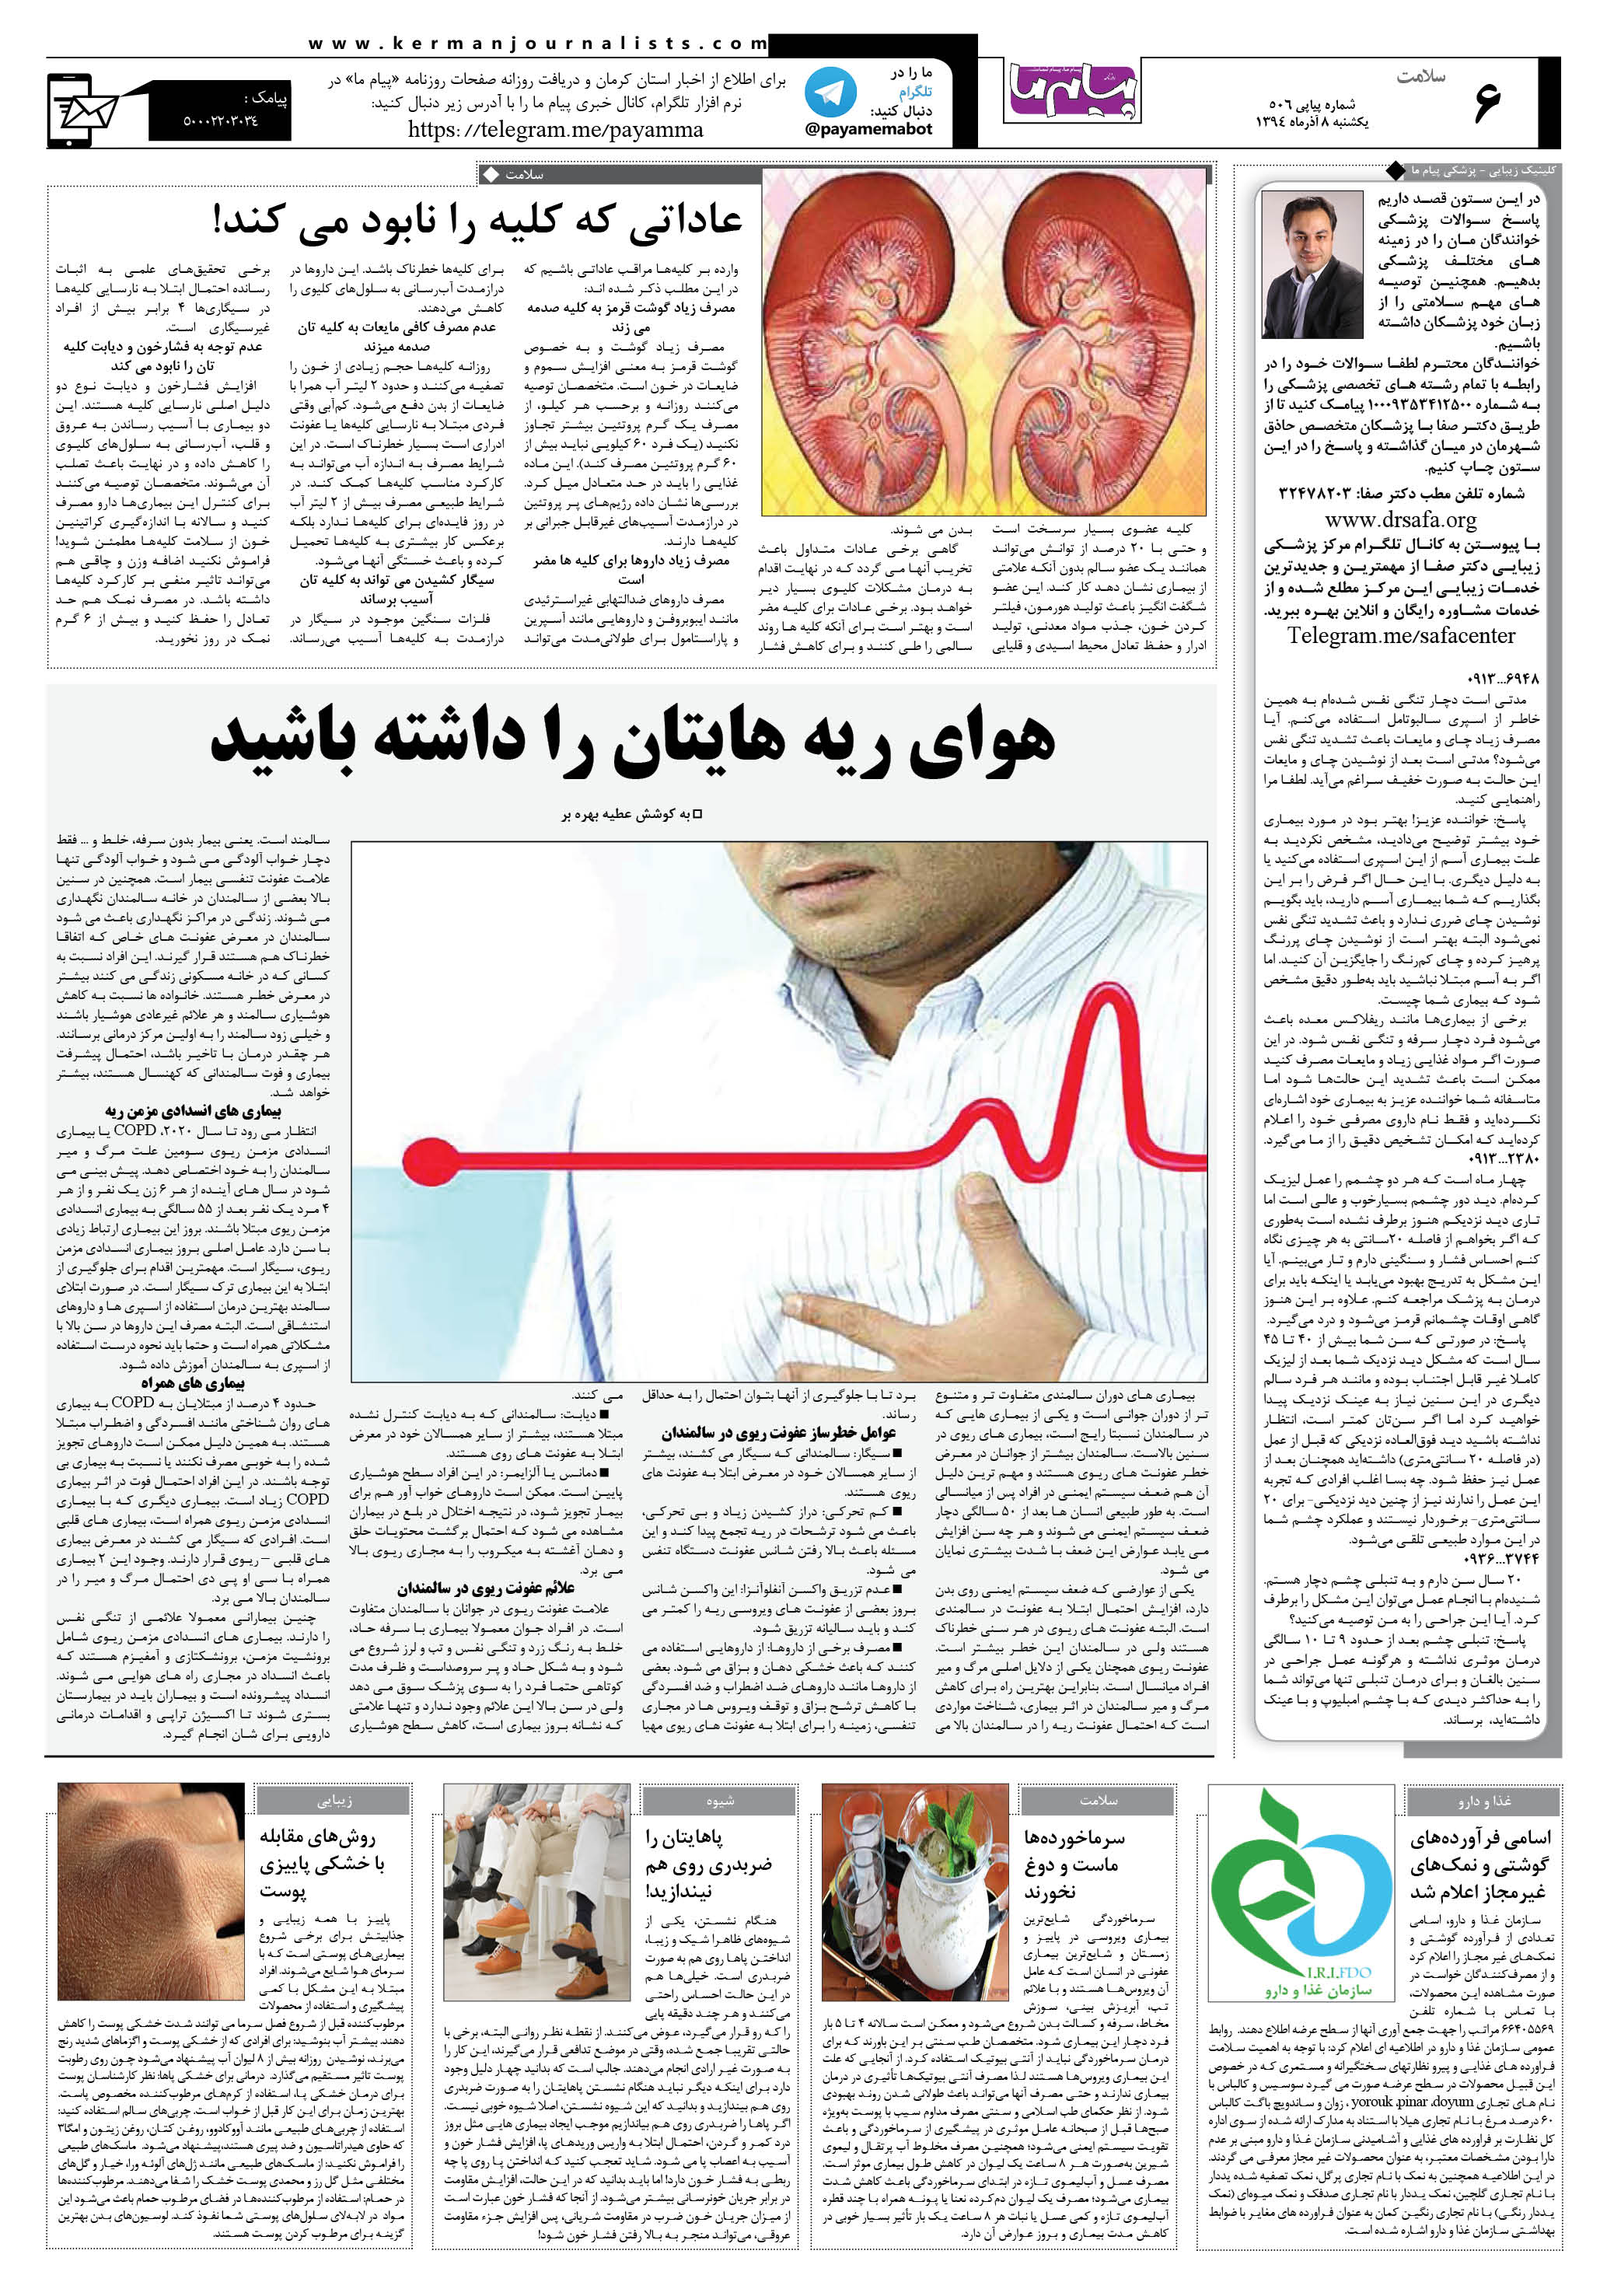 صفحه سلامت شماره 506 روزنامه پیام ما